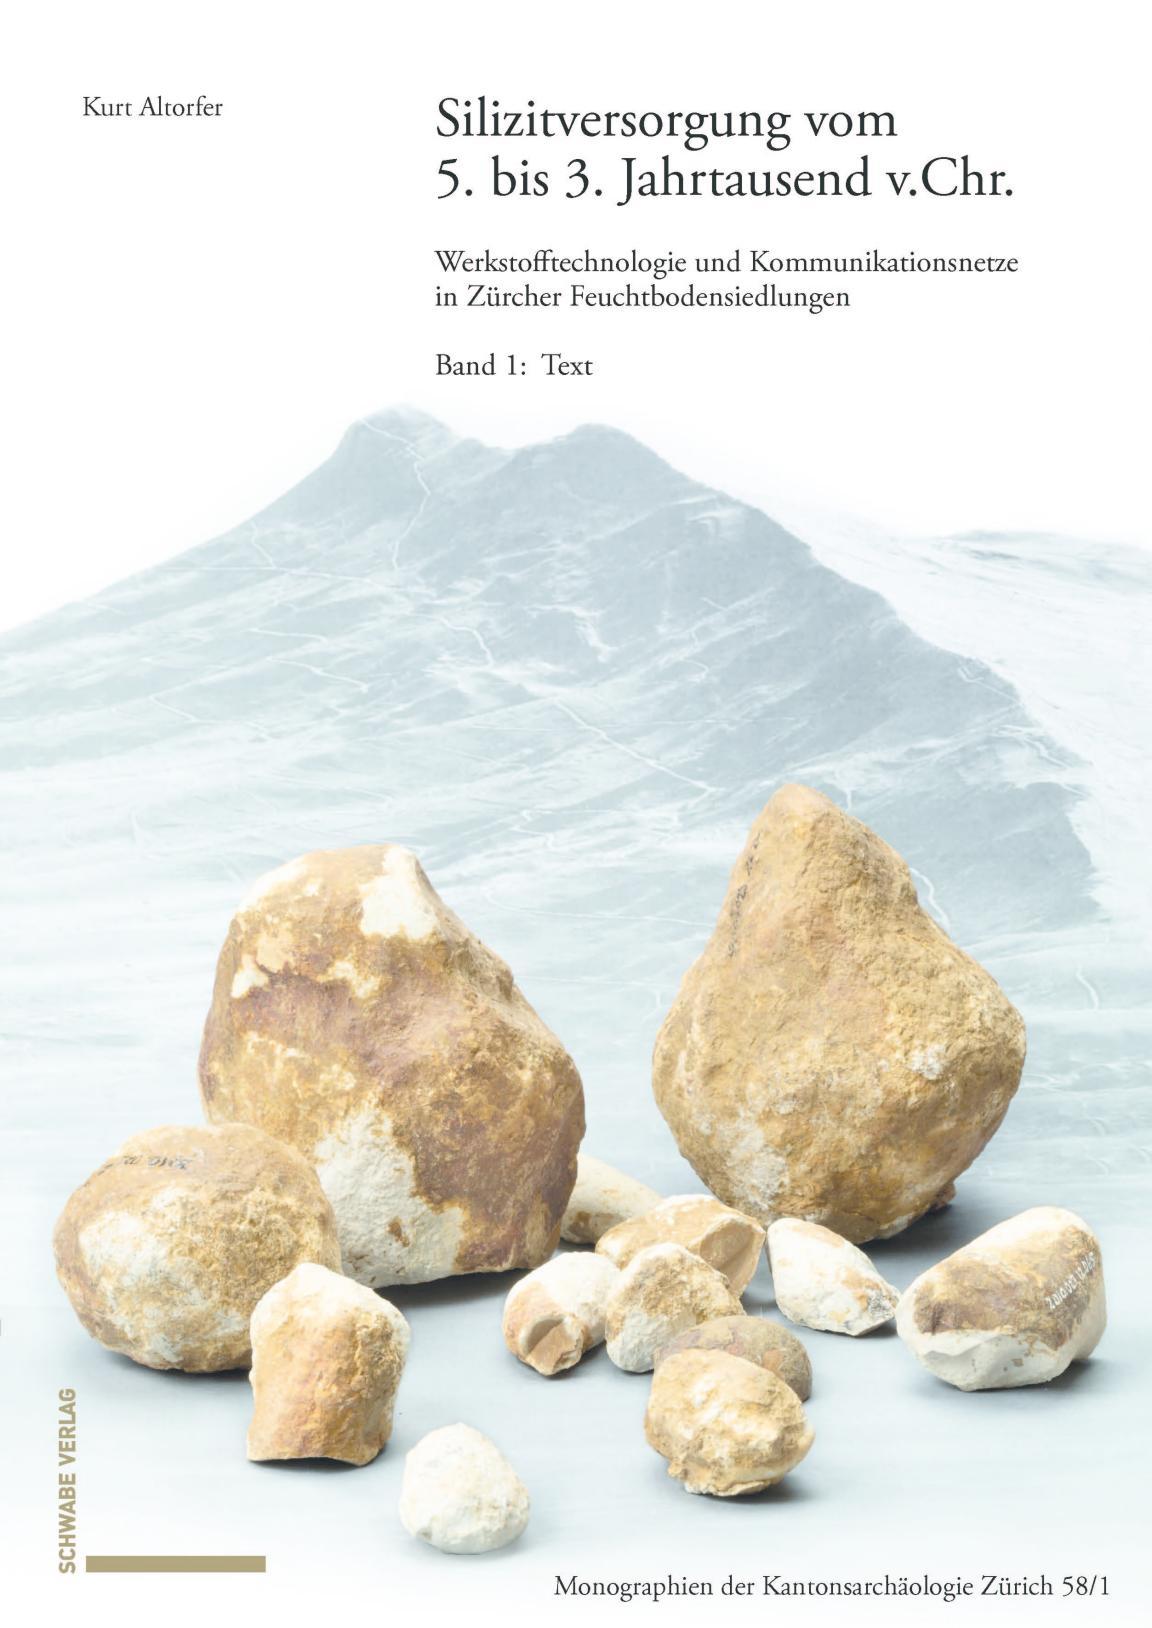 Das Titelbild der Monographie 58 zum Thema Silizitversorgung mit einem Bildern von Steinartefakten